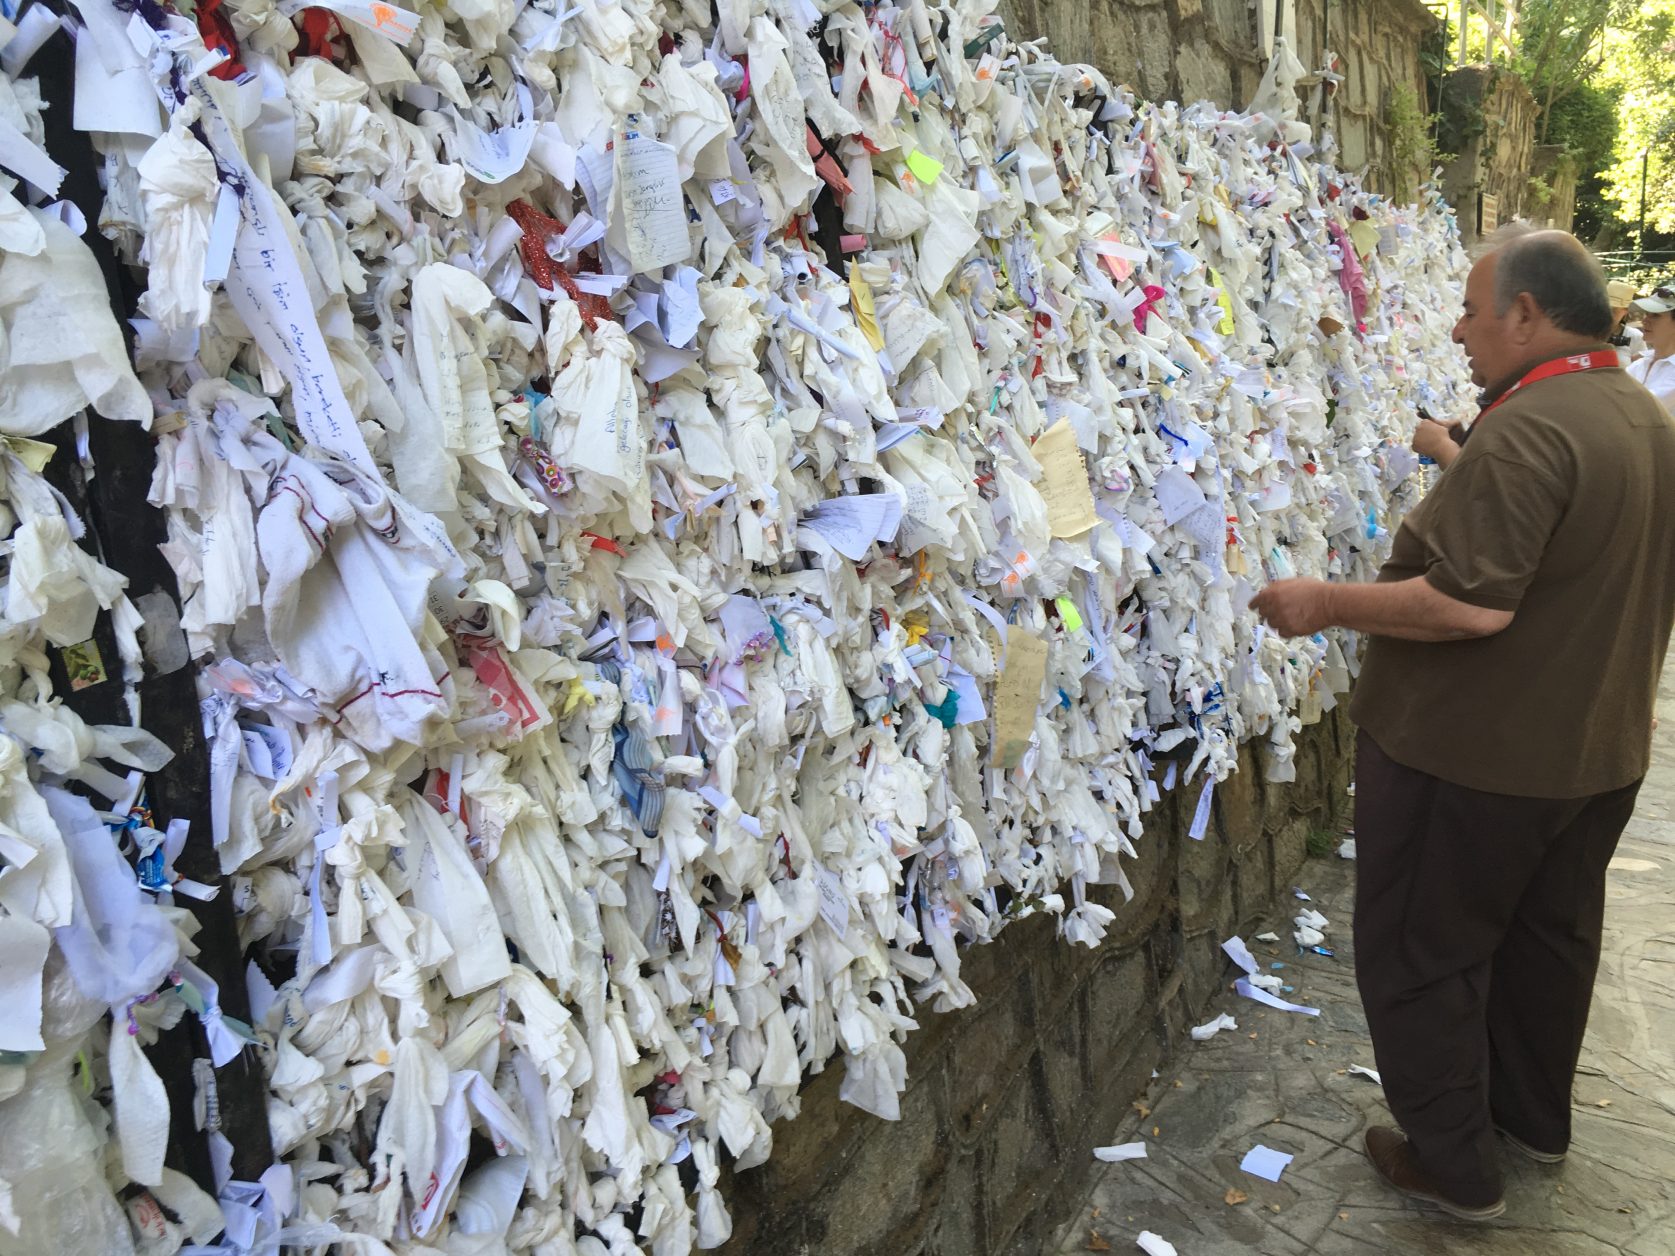 An der Mauer der Brunneneinfassung befestigen Pilger tausende von Zetteln mit ihren Gebetswünschen.